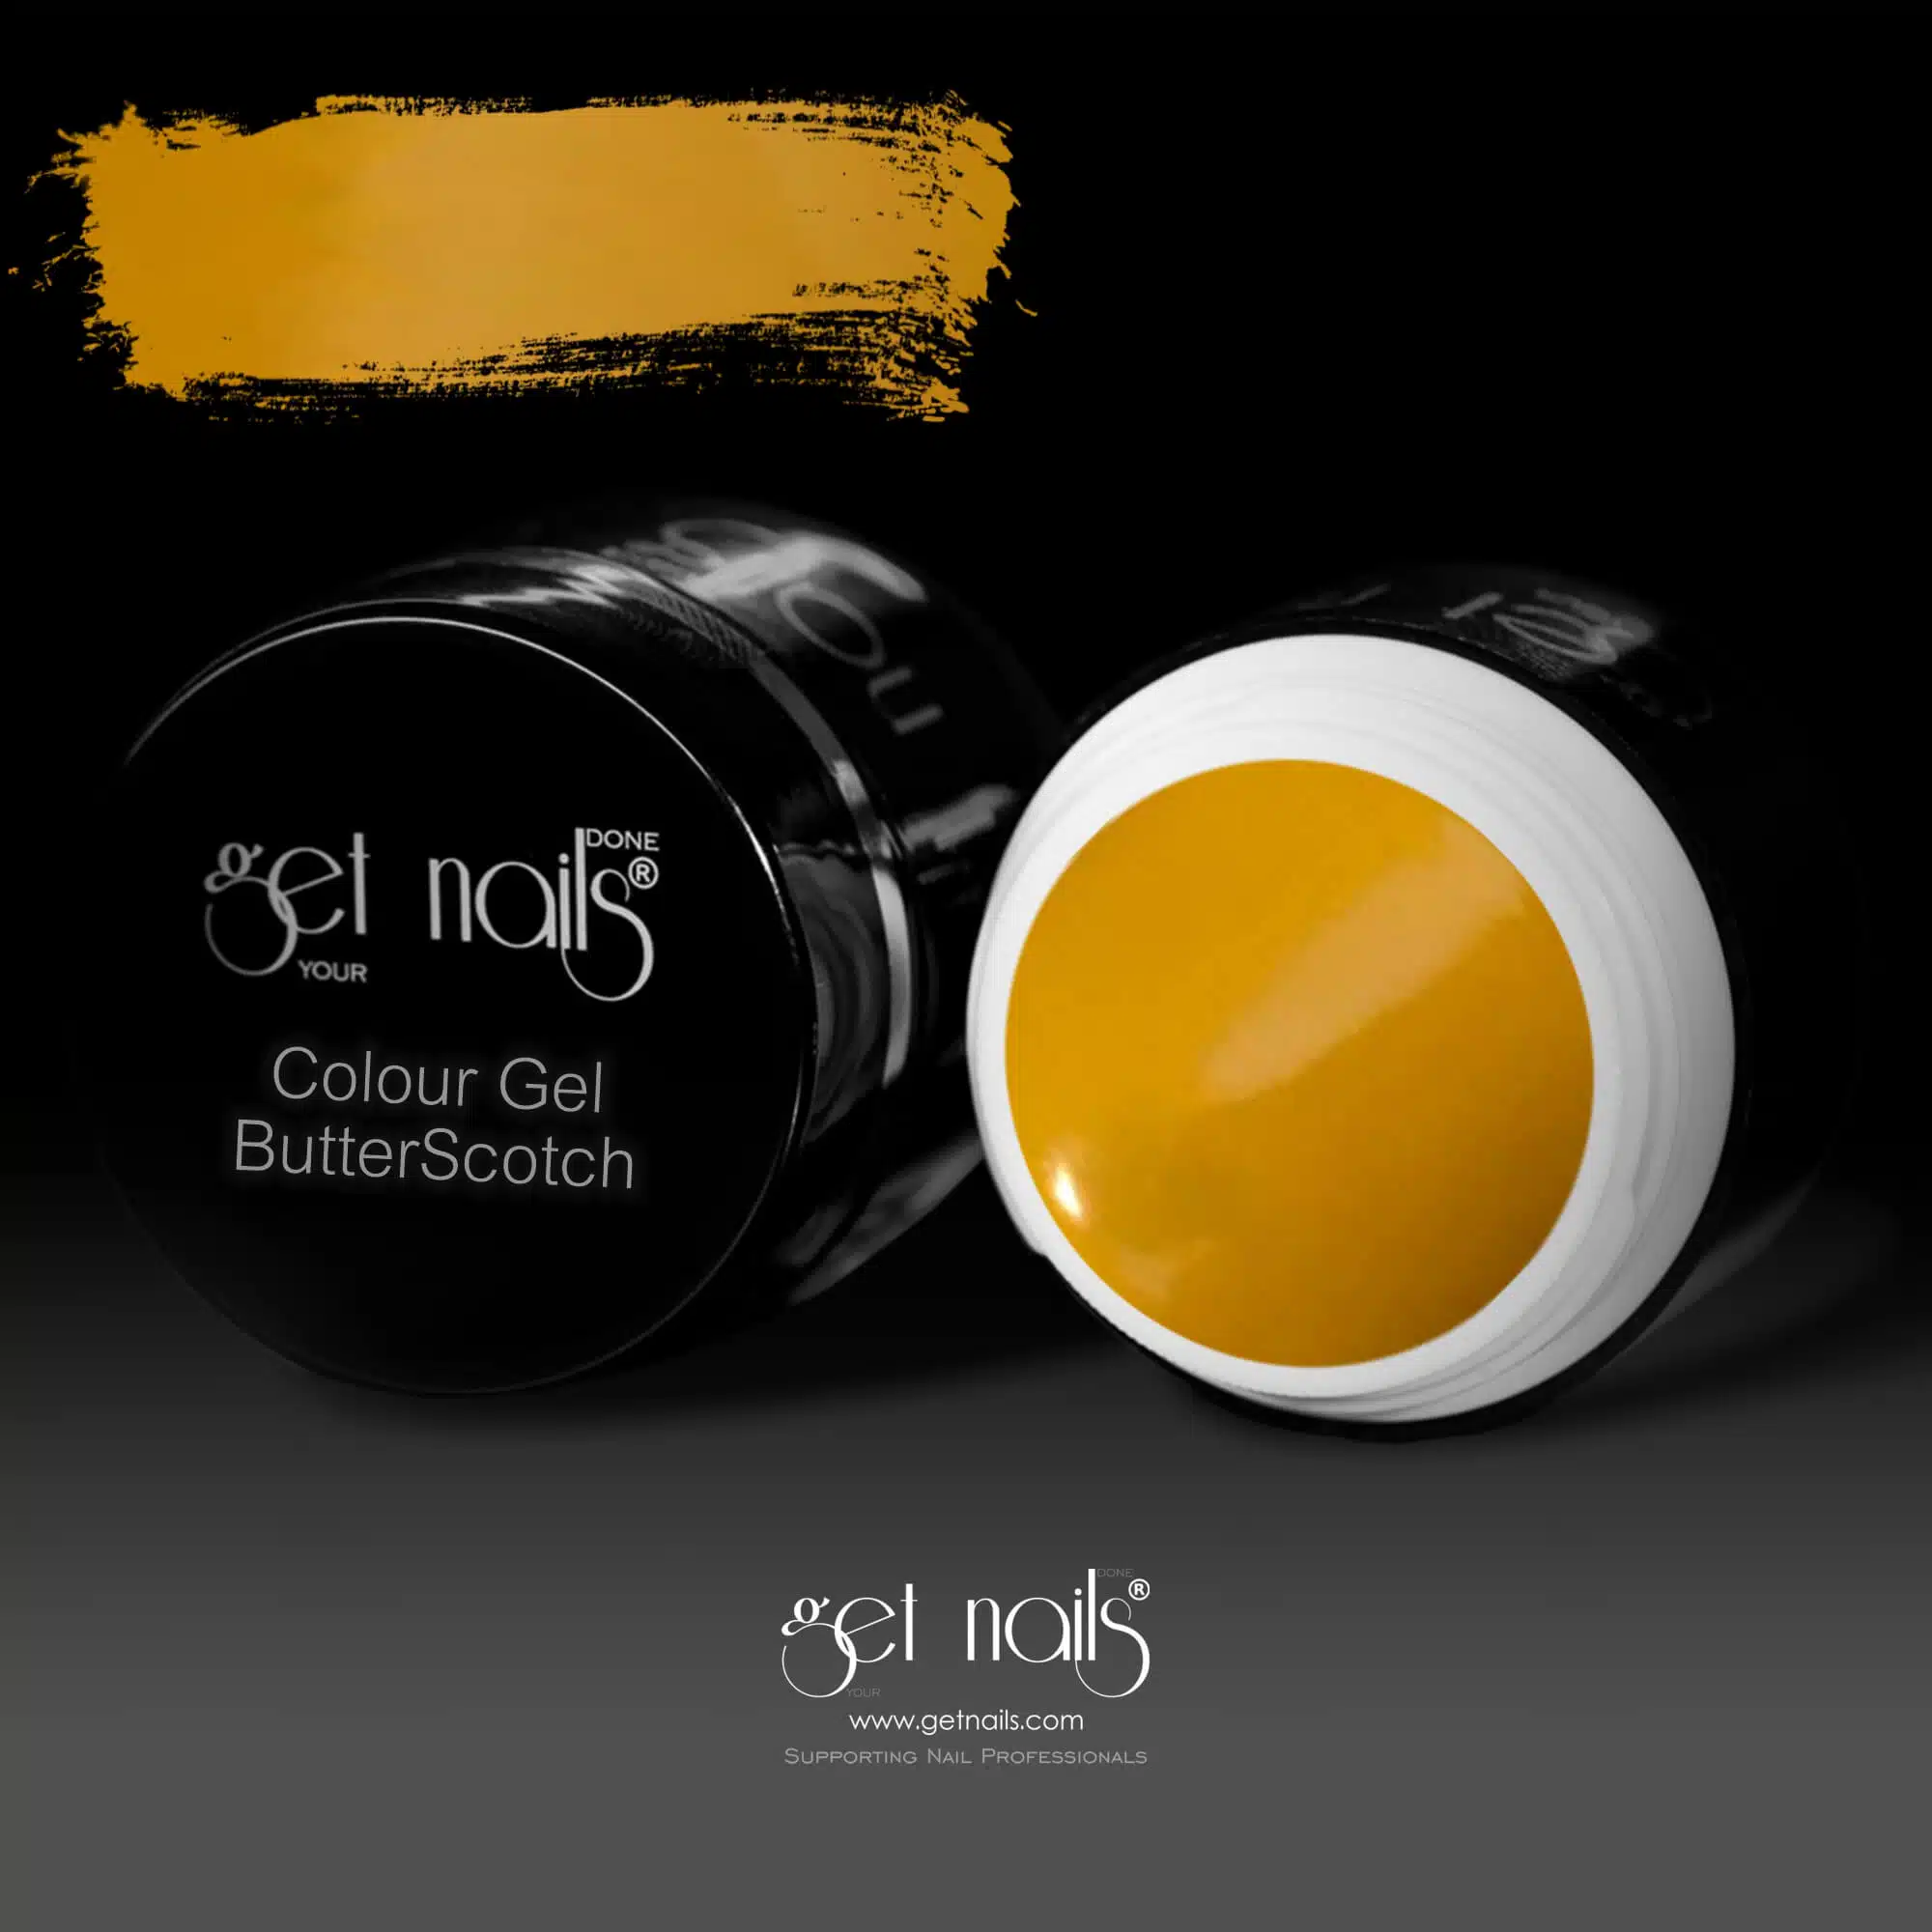 Get Nails Austria - Colour Gel ButterScotch 5g